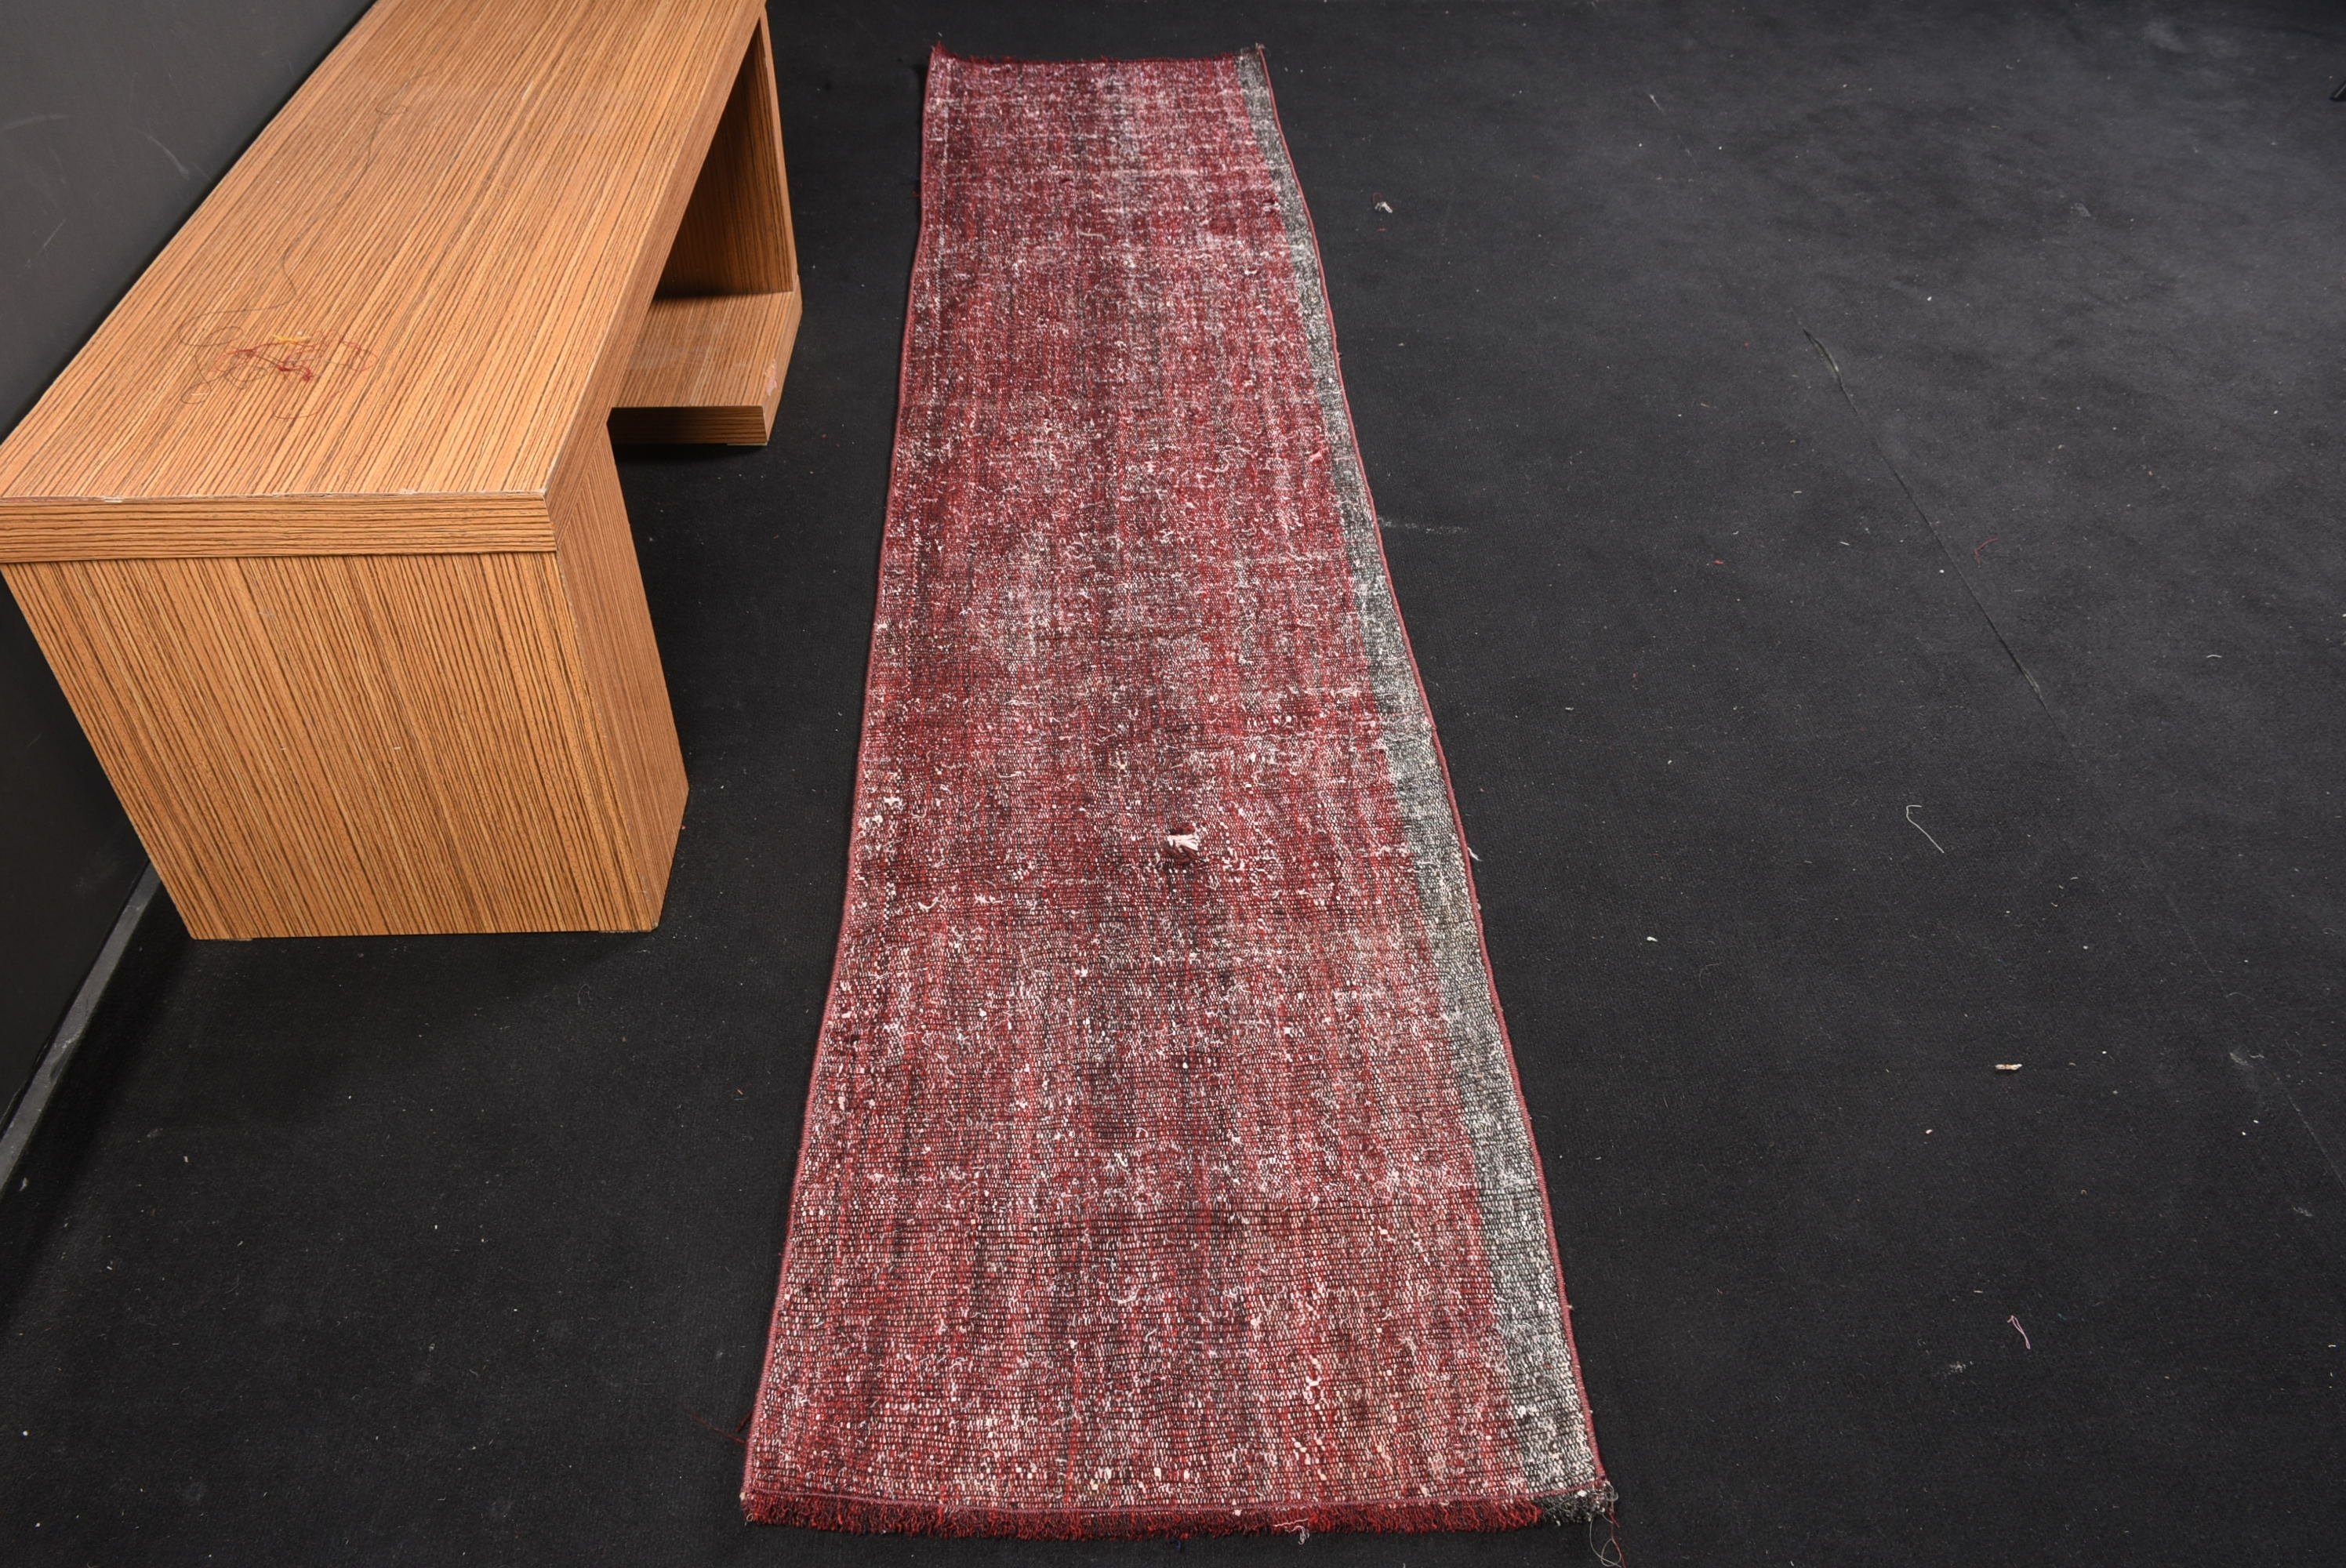 Kilim, Turkish Rug, 2x9.3 ft Runner Rug, Stair Rug, Kitchen Rug, Vintage Rug, Wool Rug, Red Cool Rug, Rugs for Hallway, Corridor Rug